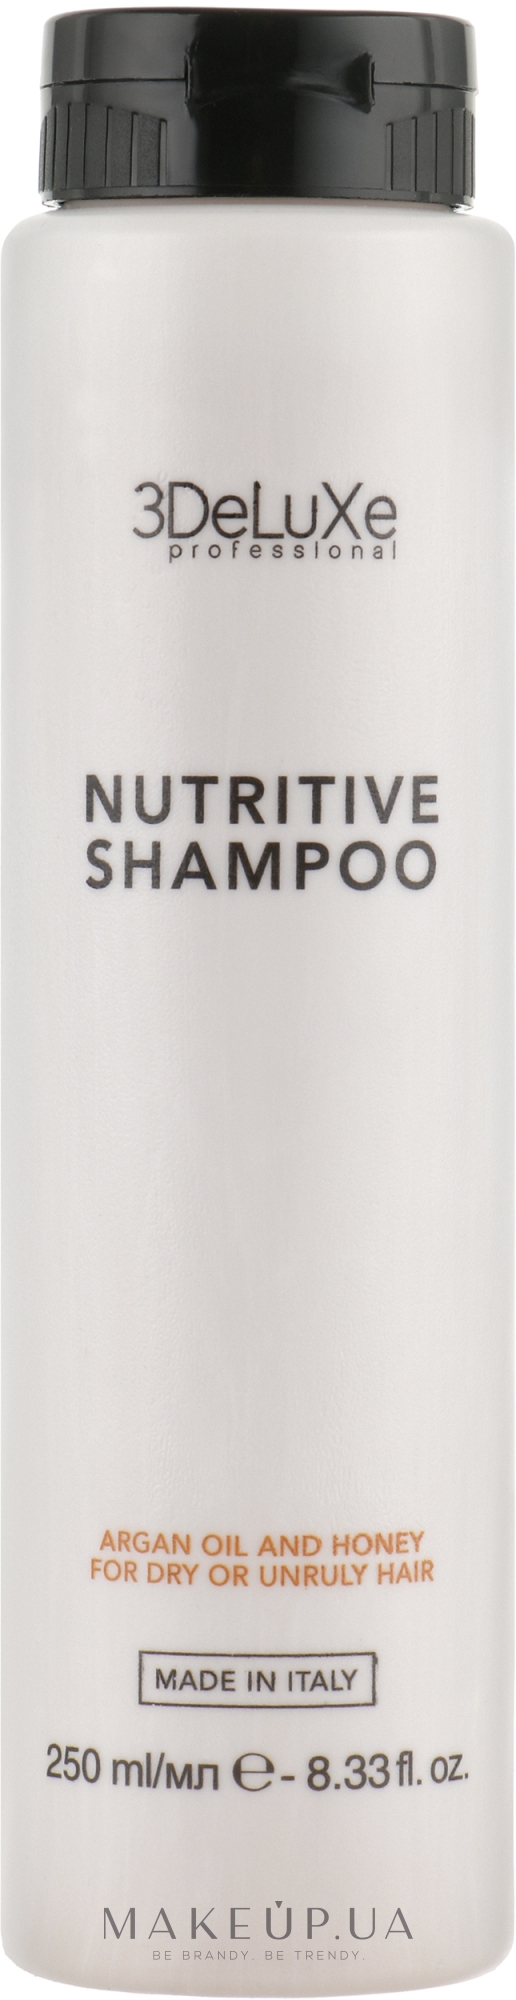 Шампунь для сухих и повреждённых волос - 3DeLuXe Nutritive Shampoo — фото 250ml